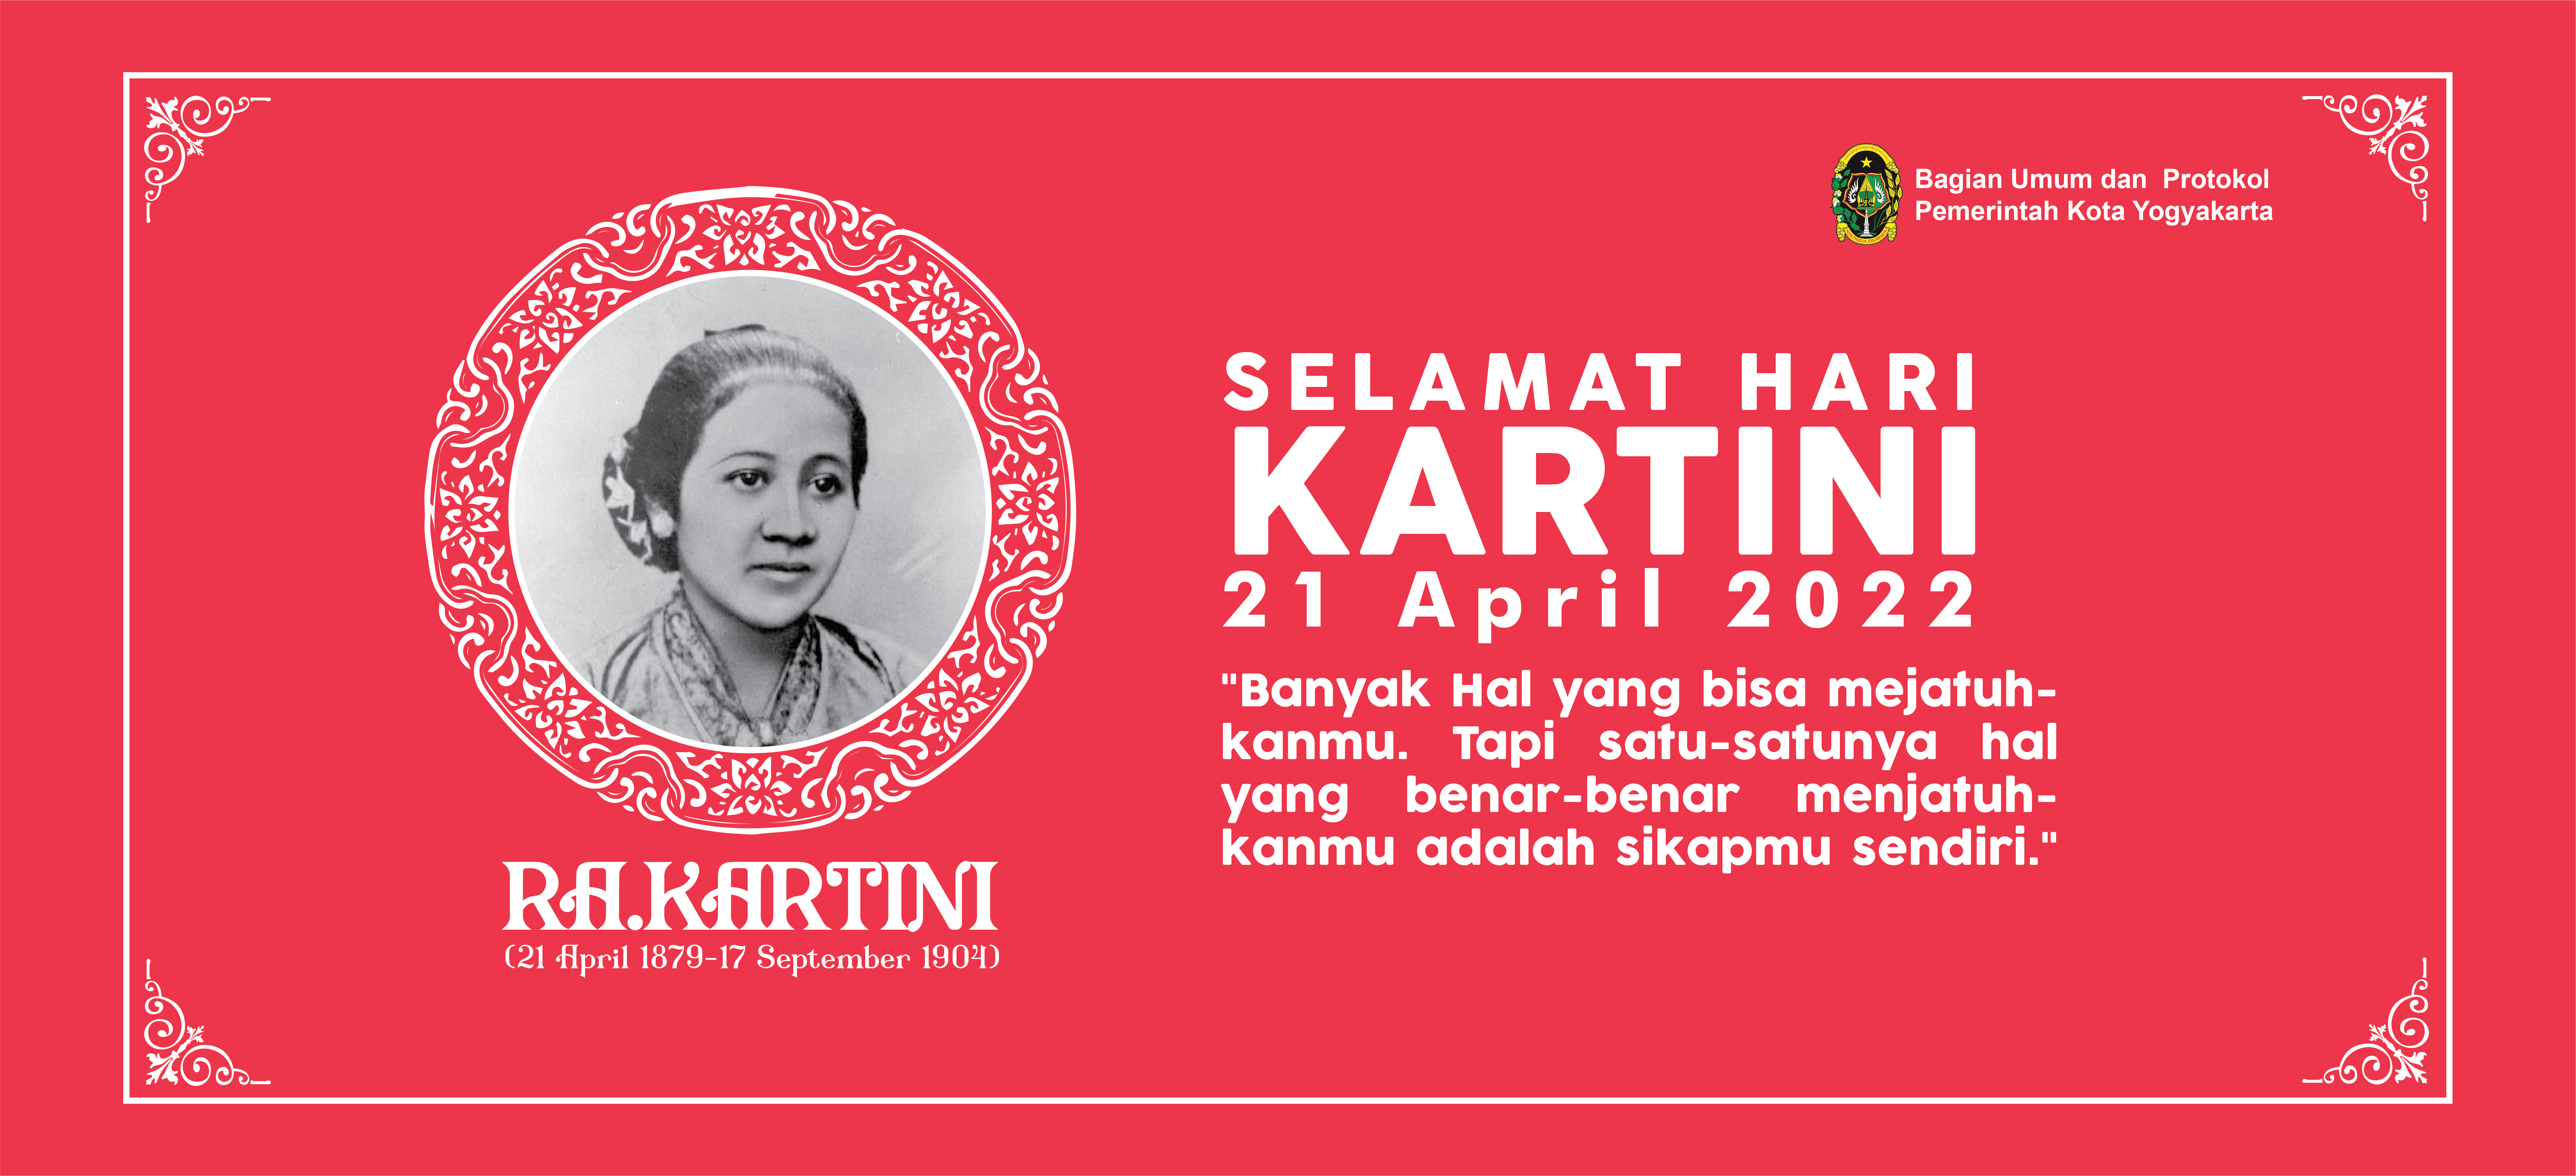 Selamat Hari Kartini bagi seluruh wanita di Indonesia !